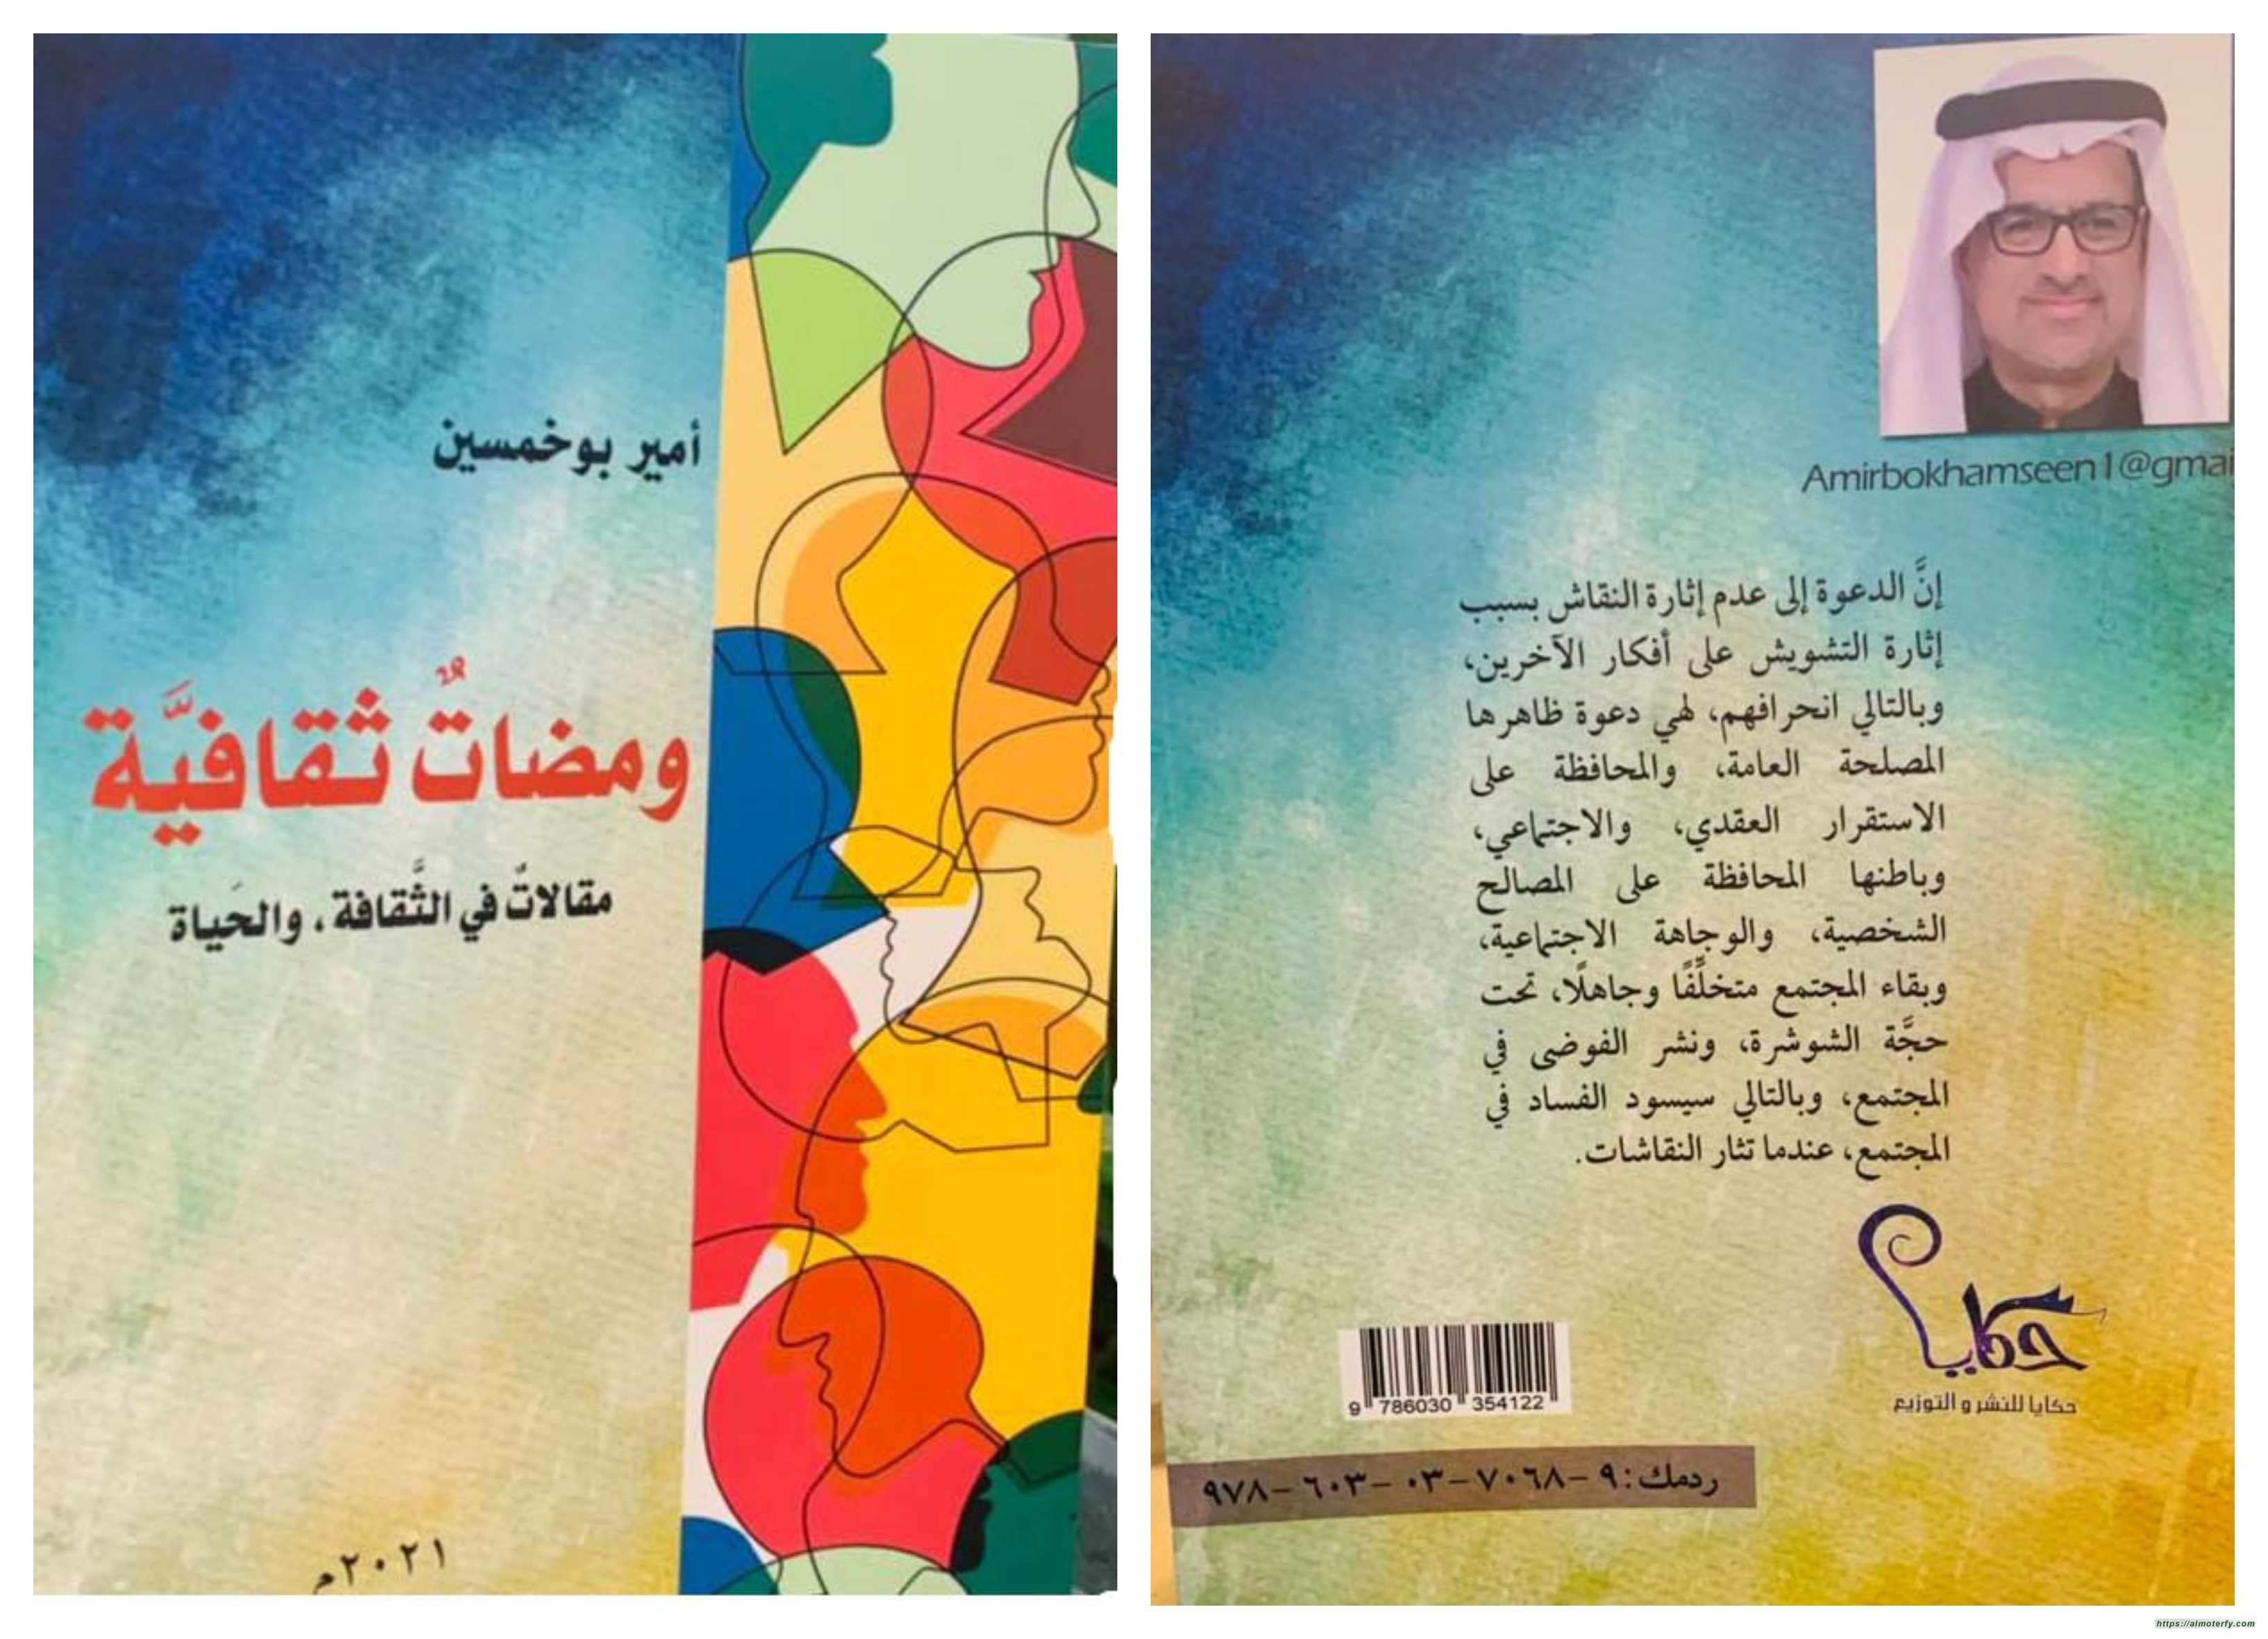 ثقافية للأديب الكاتب أمير موسى بوخمسين، اصدار جديد